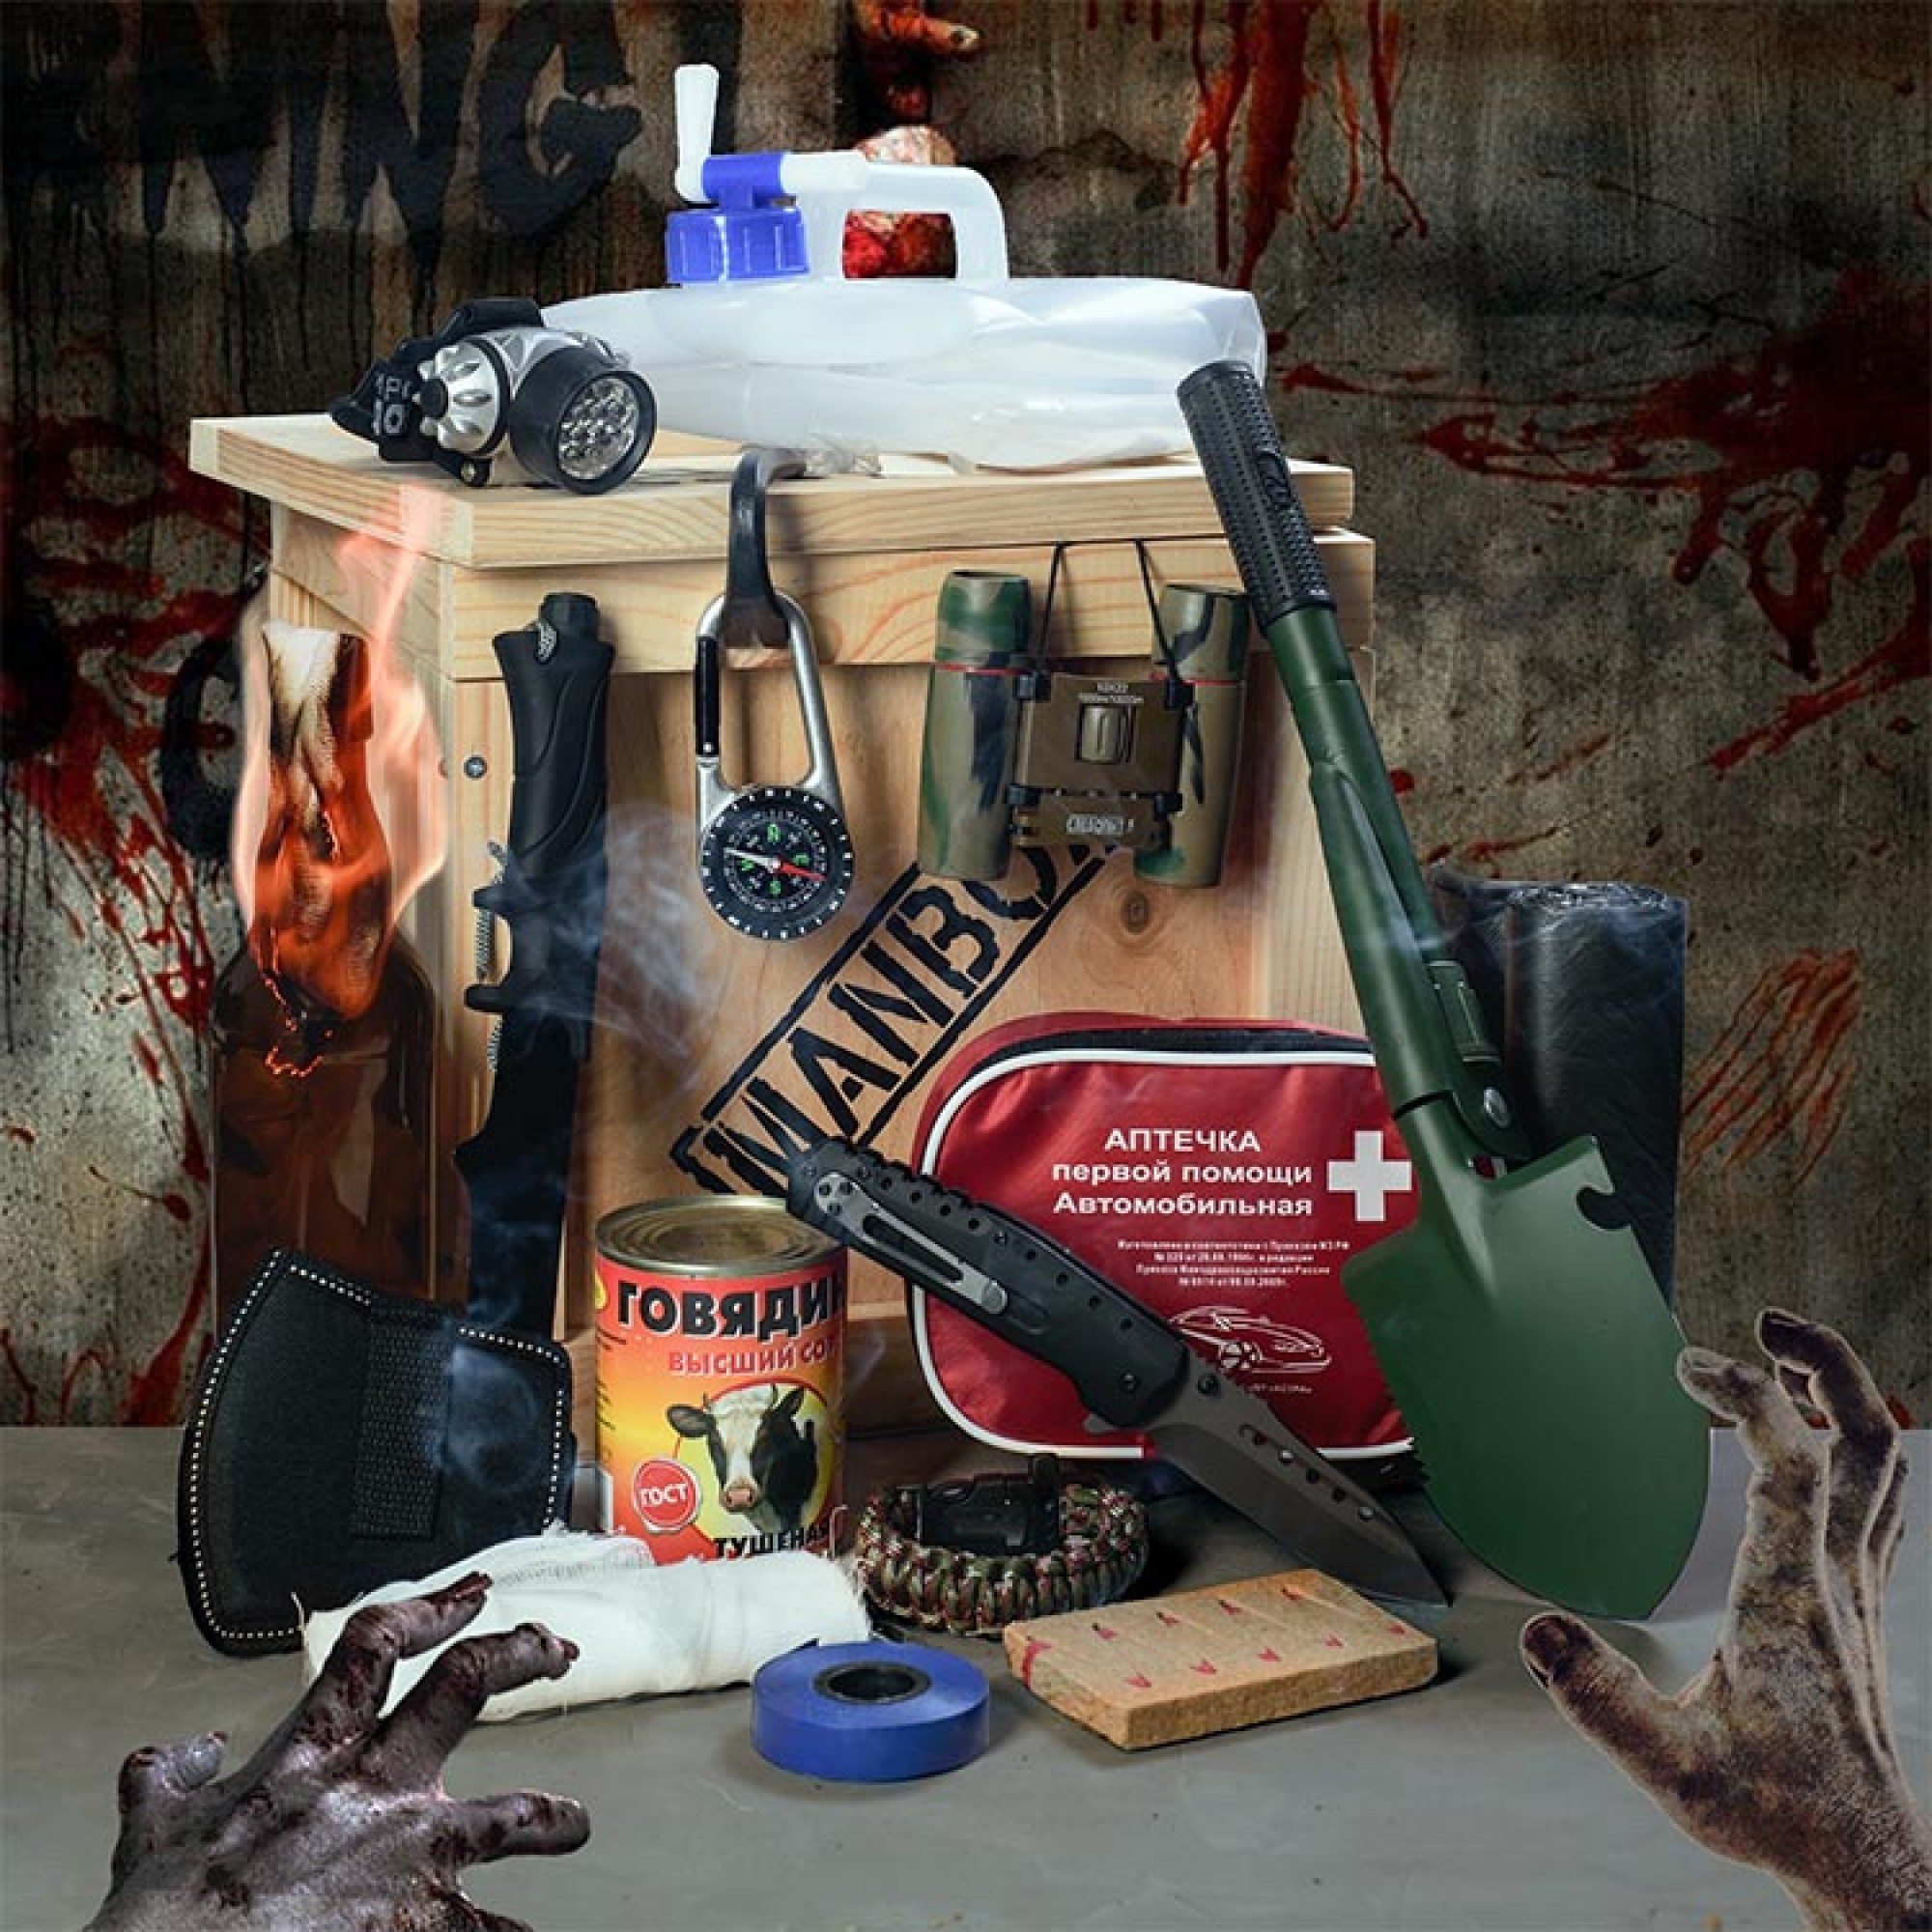 Подарки на случай зомби-апокалипсиса: лучшие идеи